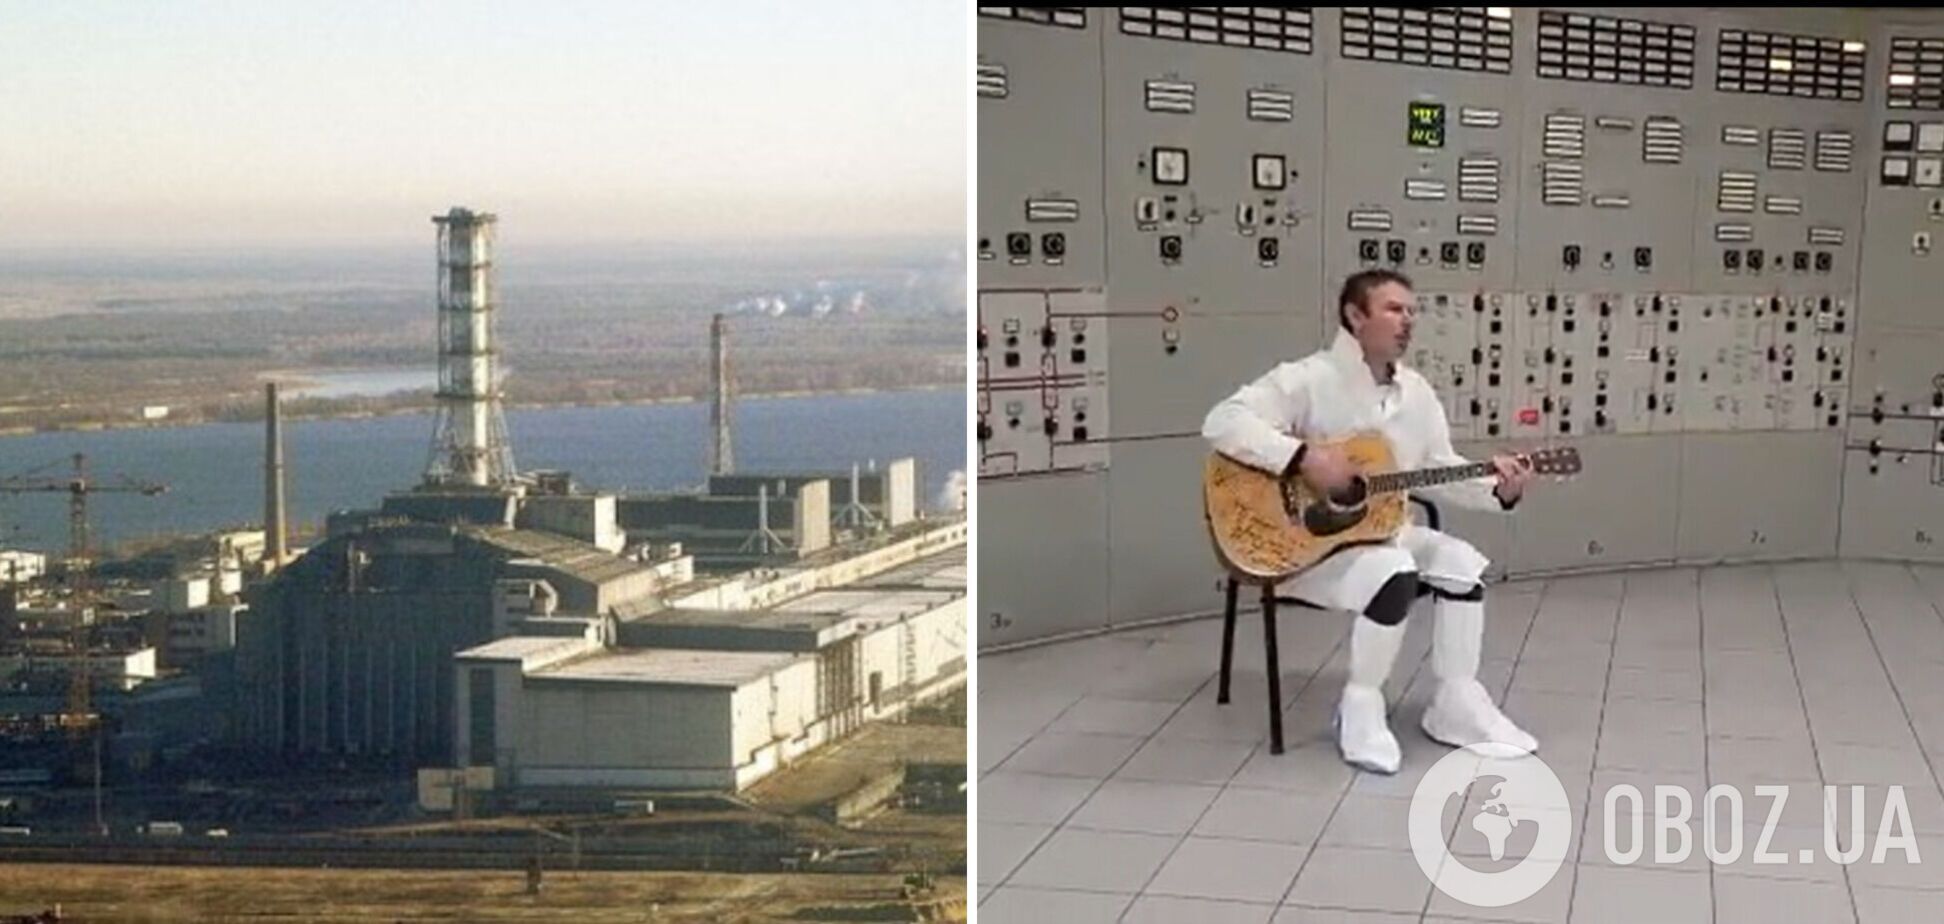 Вакарчук спел на Чернобыльской АЭС: видео необычного выступления